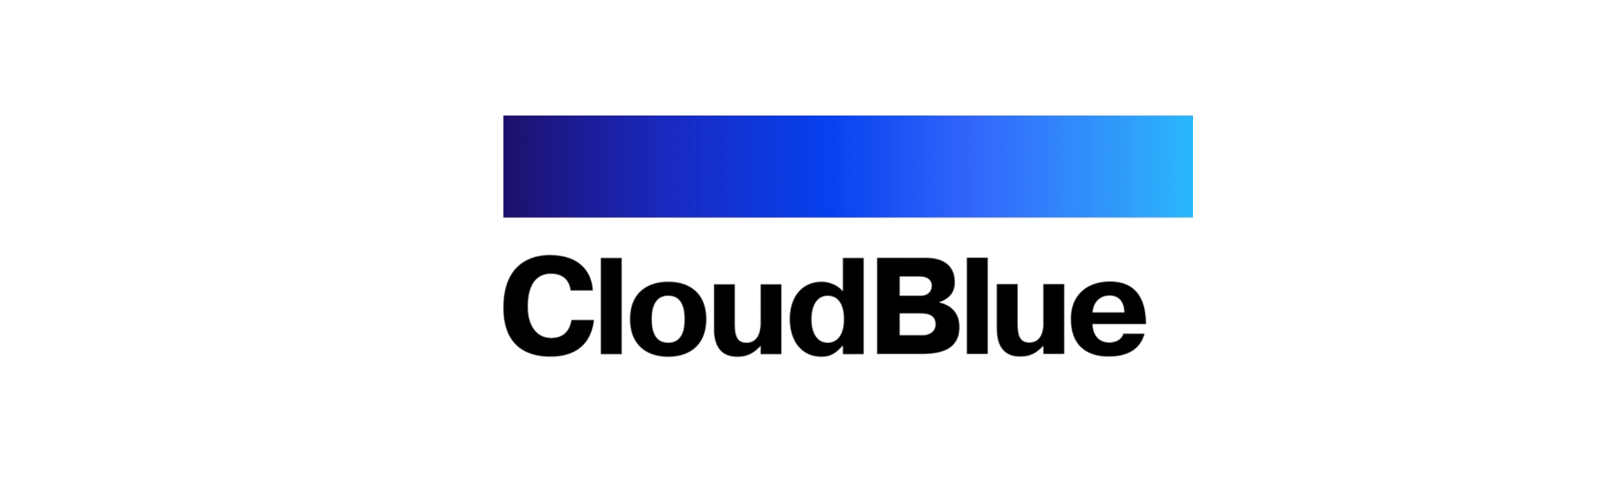 historia_CloudBlue.png